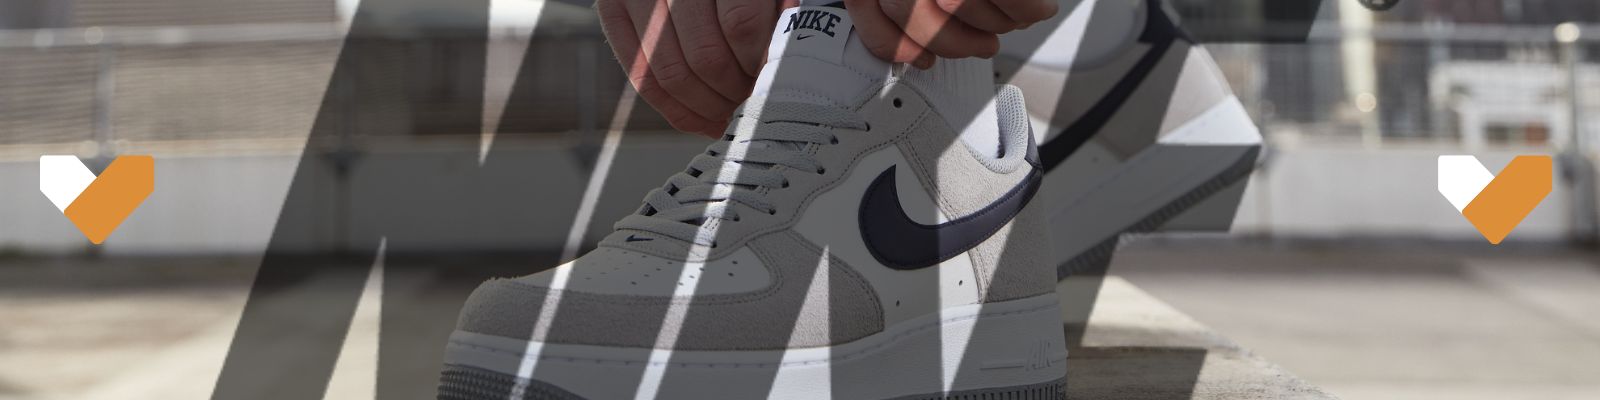 Tudo o que você precisa saber antes de comprar um Nike Air Force!